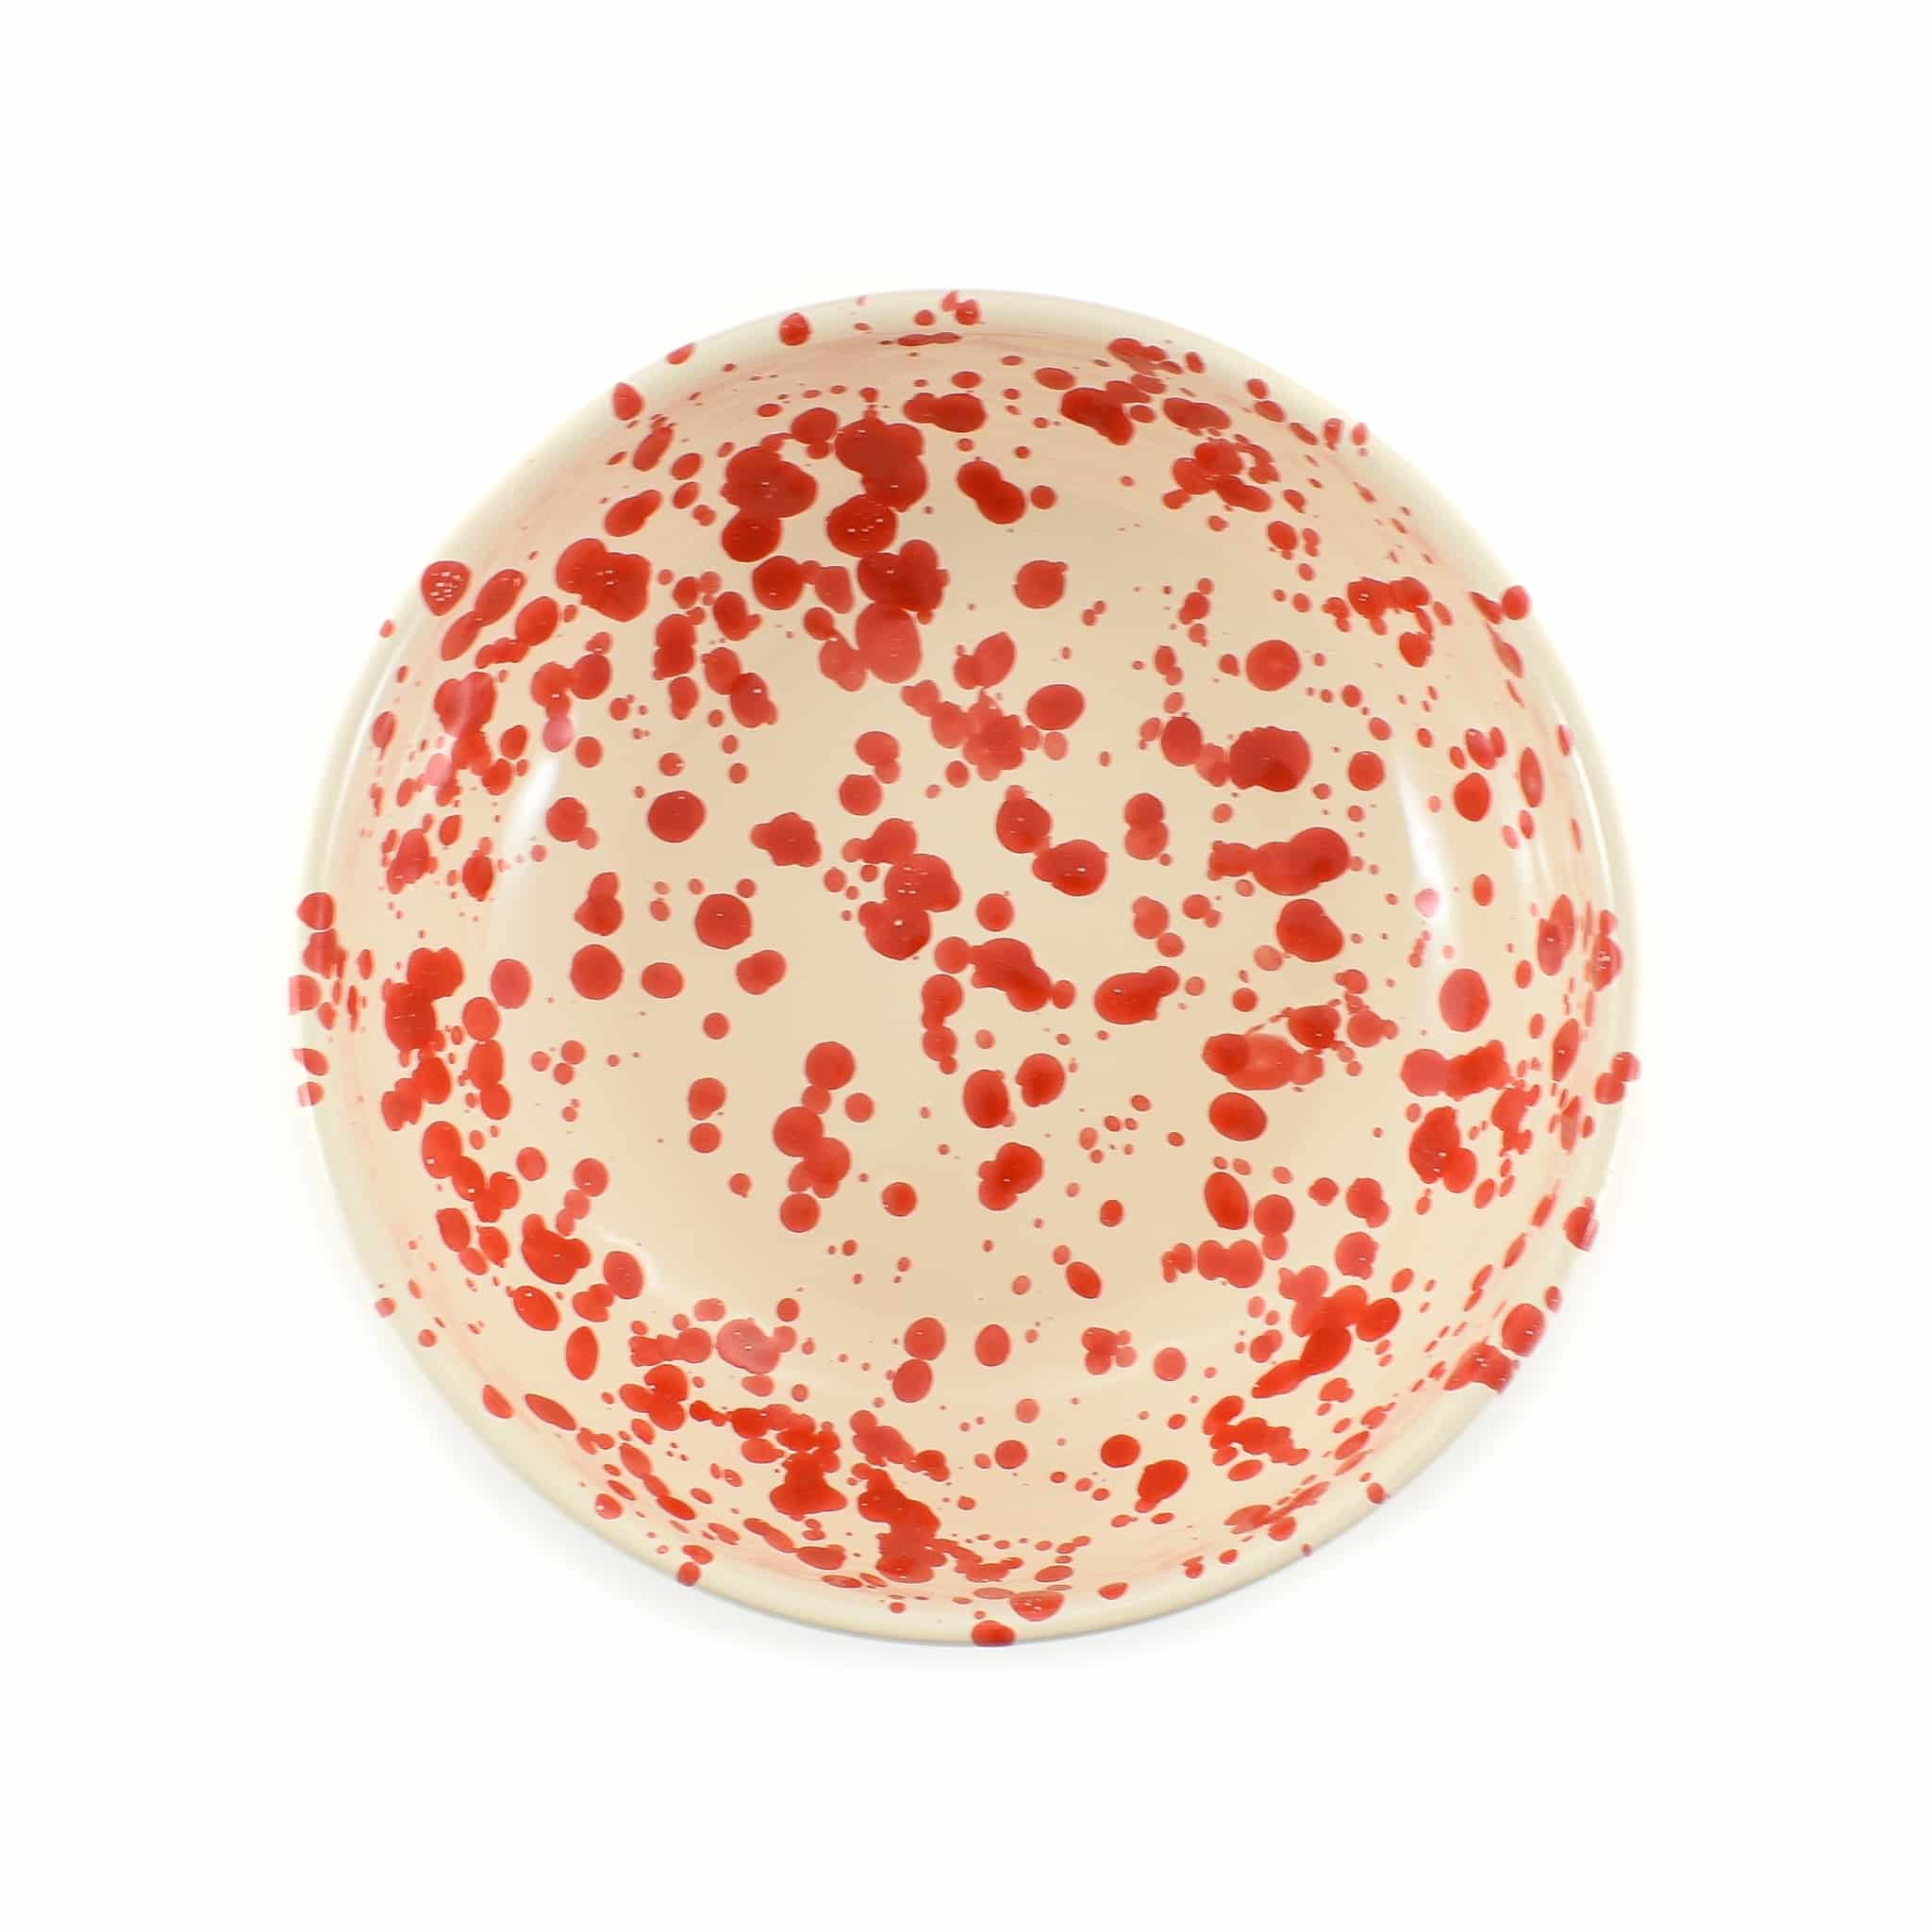  Puglia Red Splatter Bowl 19cm overhead